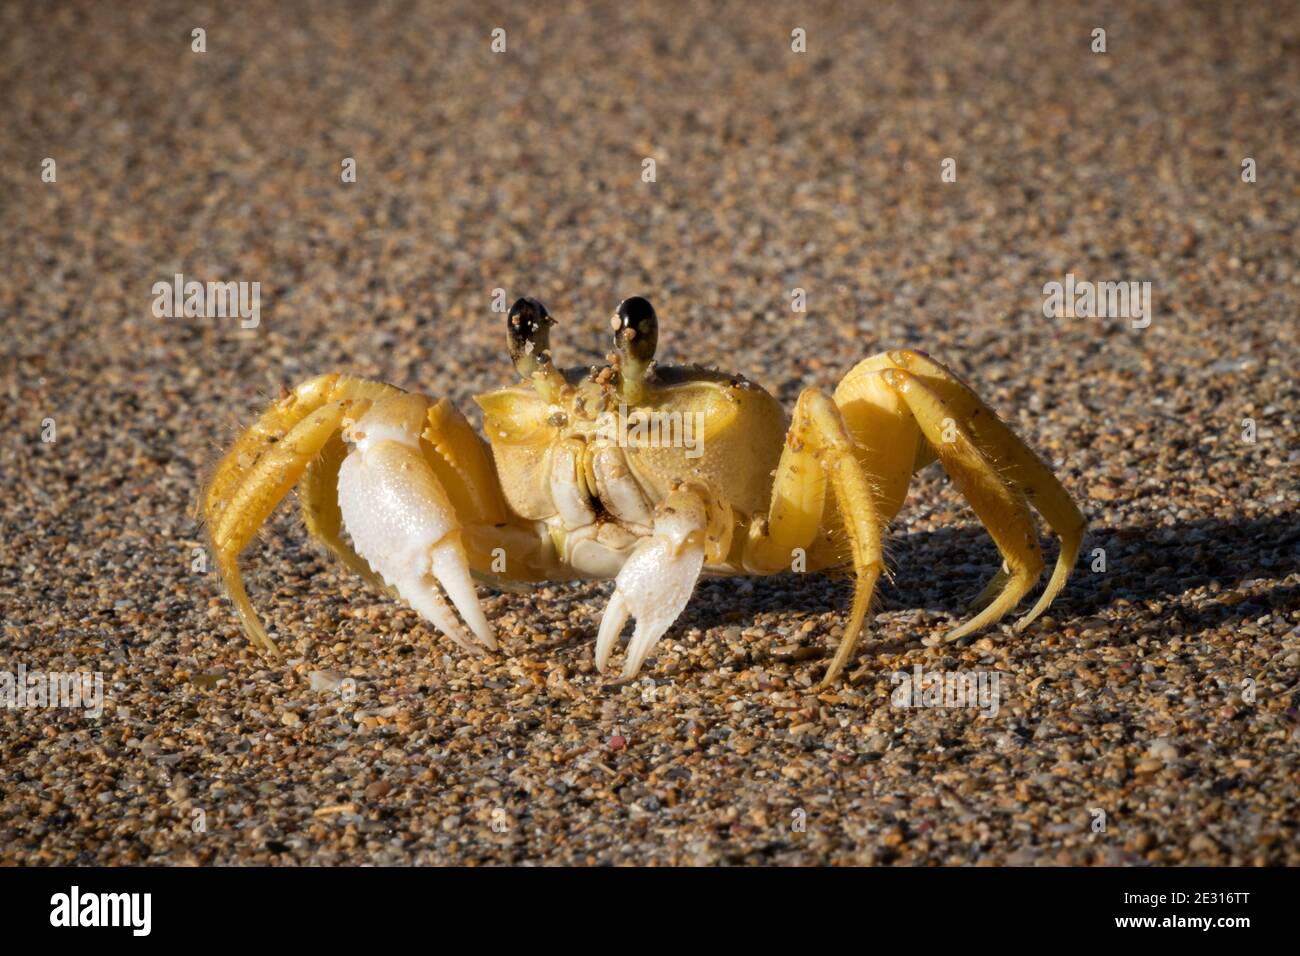 Cangrejo fantasma alerta en la orilla del mar, República Dominicana | Alert ghost crab on the seashore, Dominican Republic Stock Photo